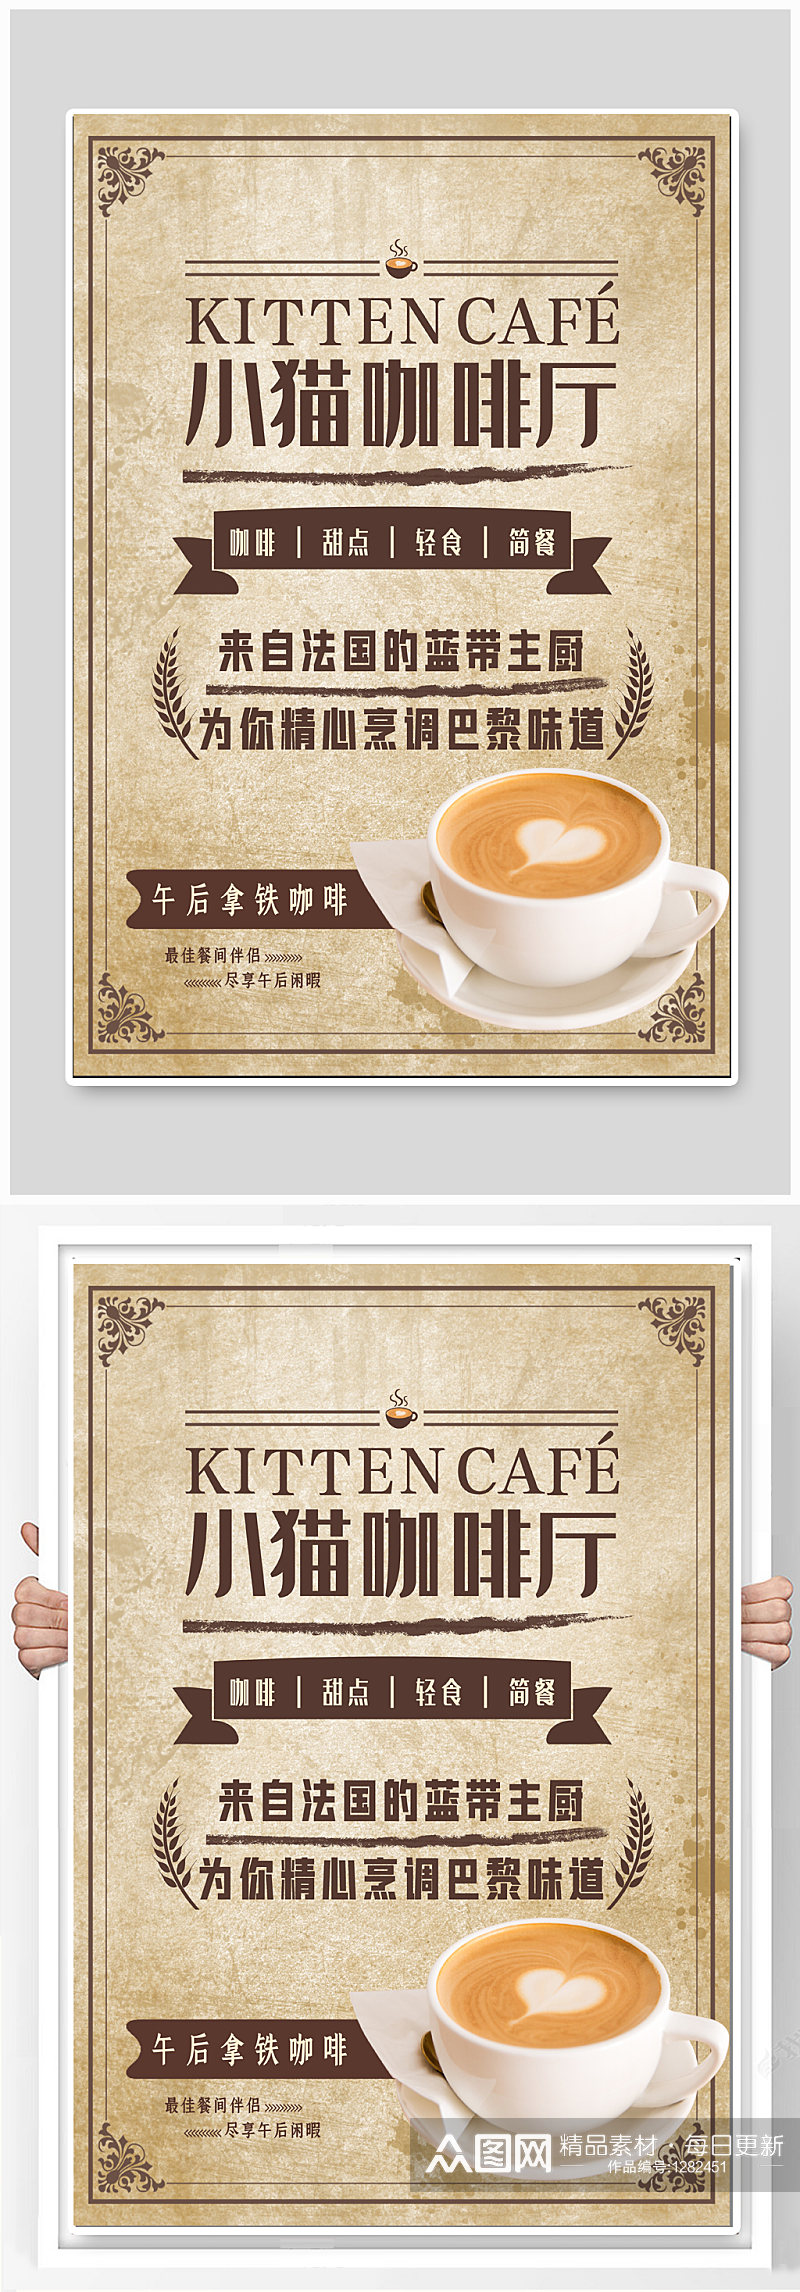 咖啡厅咖啡馆宣传海报素材